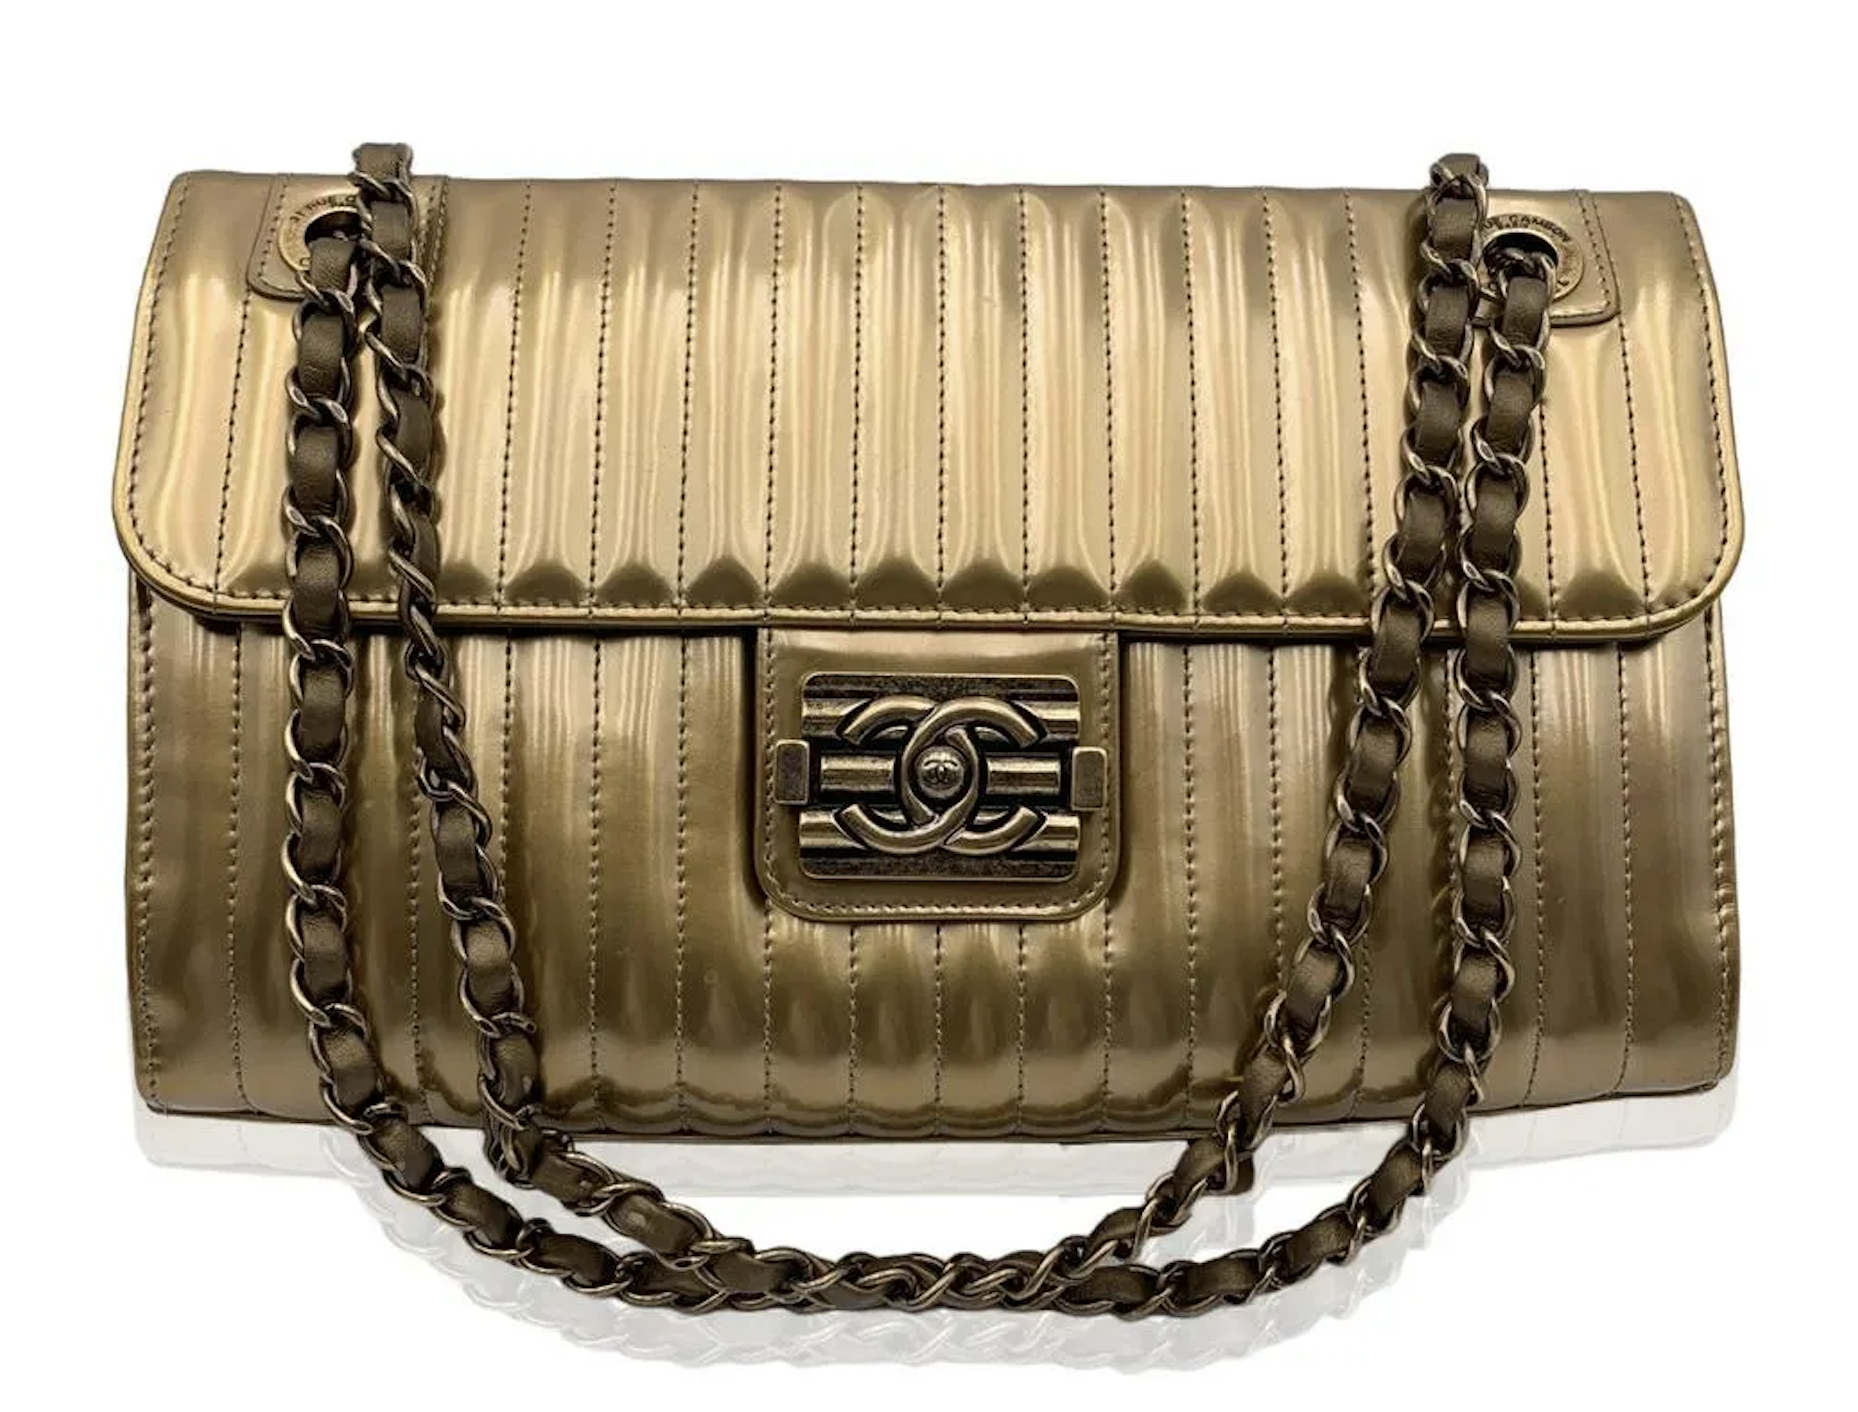 Chanel quilted Boy shoulder bag in gold, est. $4,500-$5,500